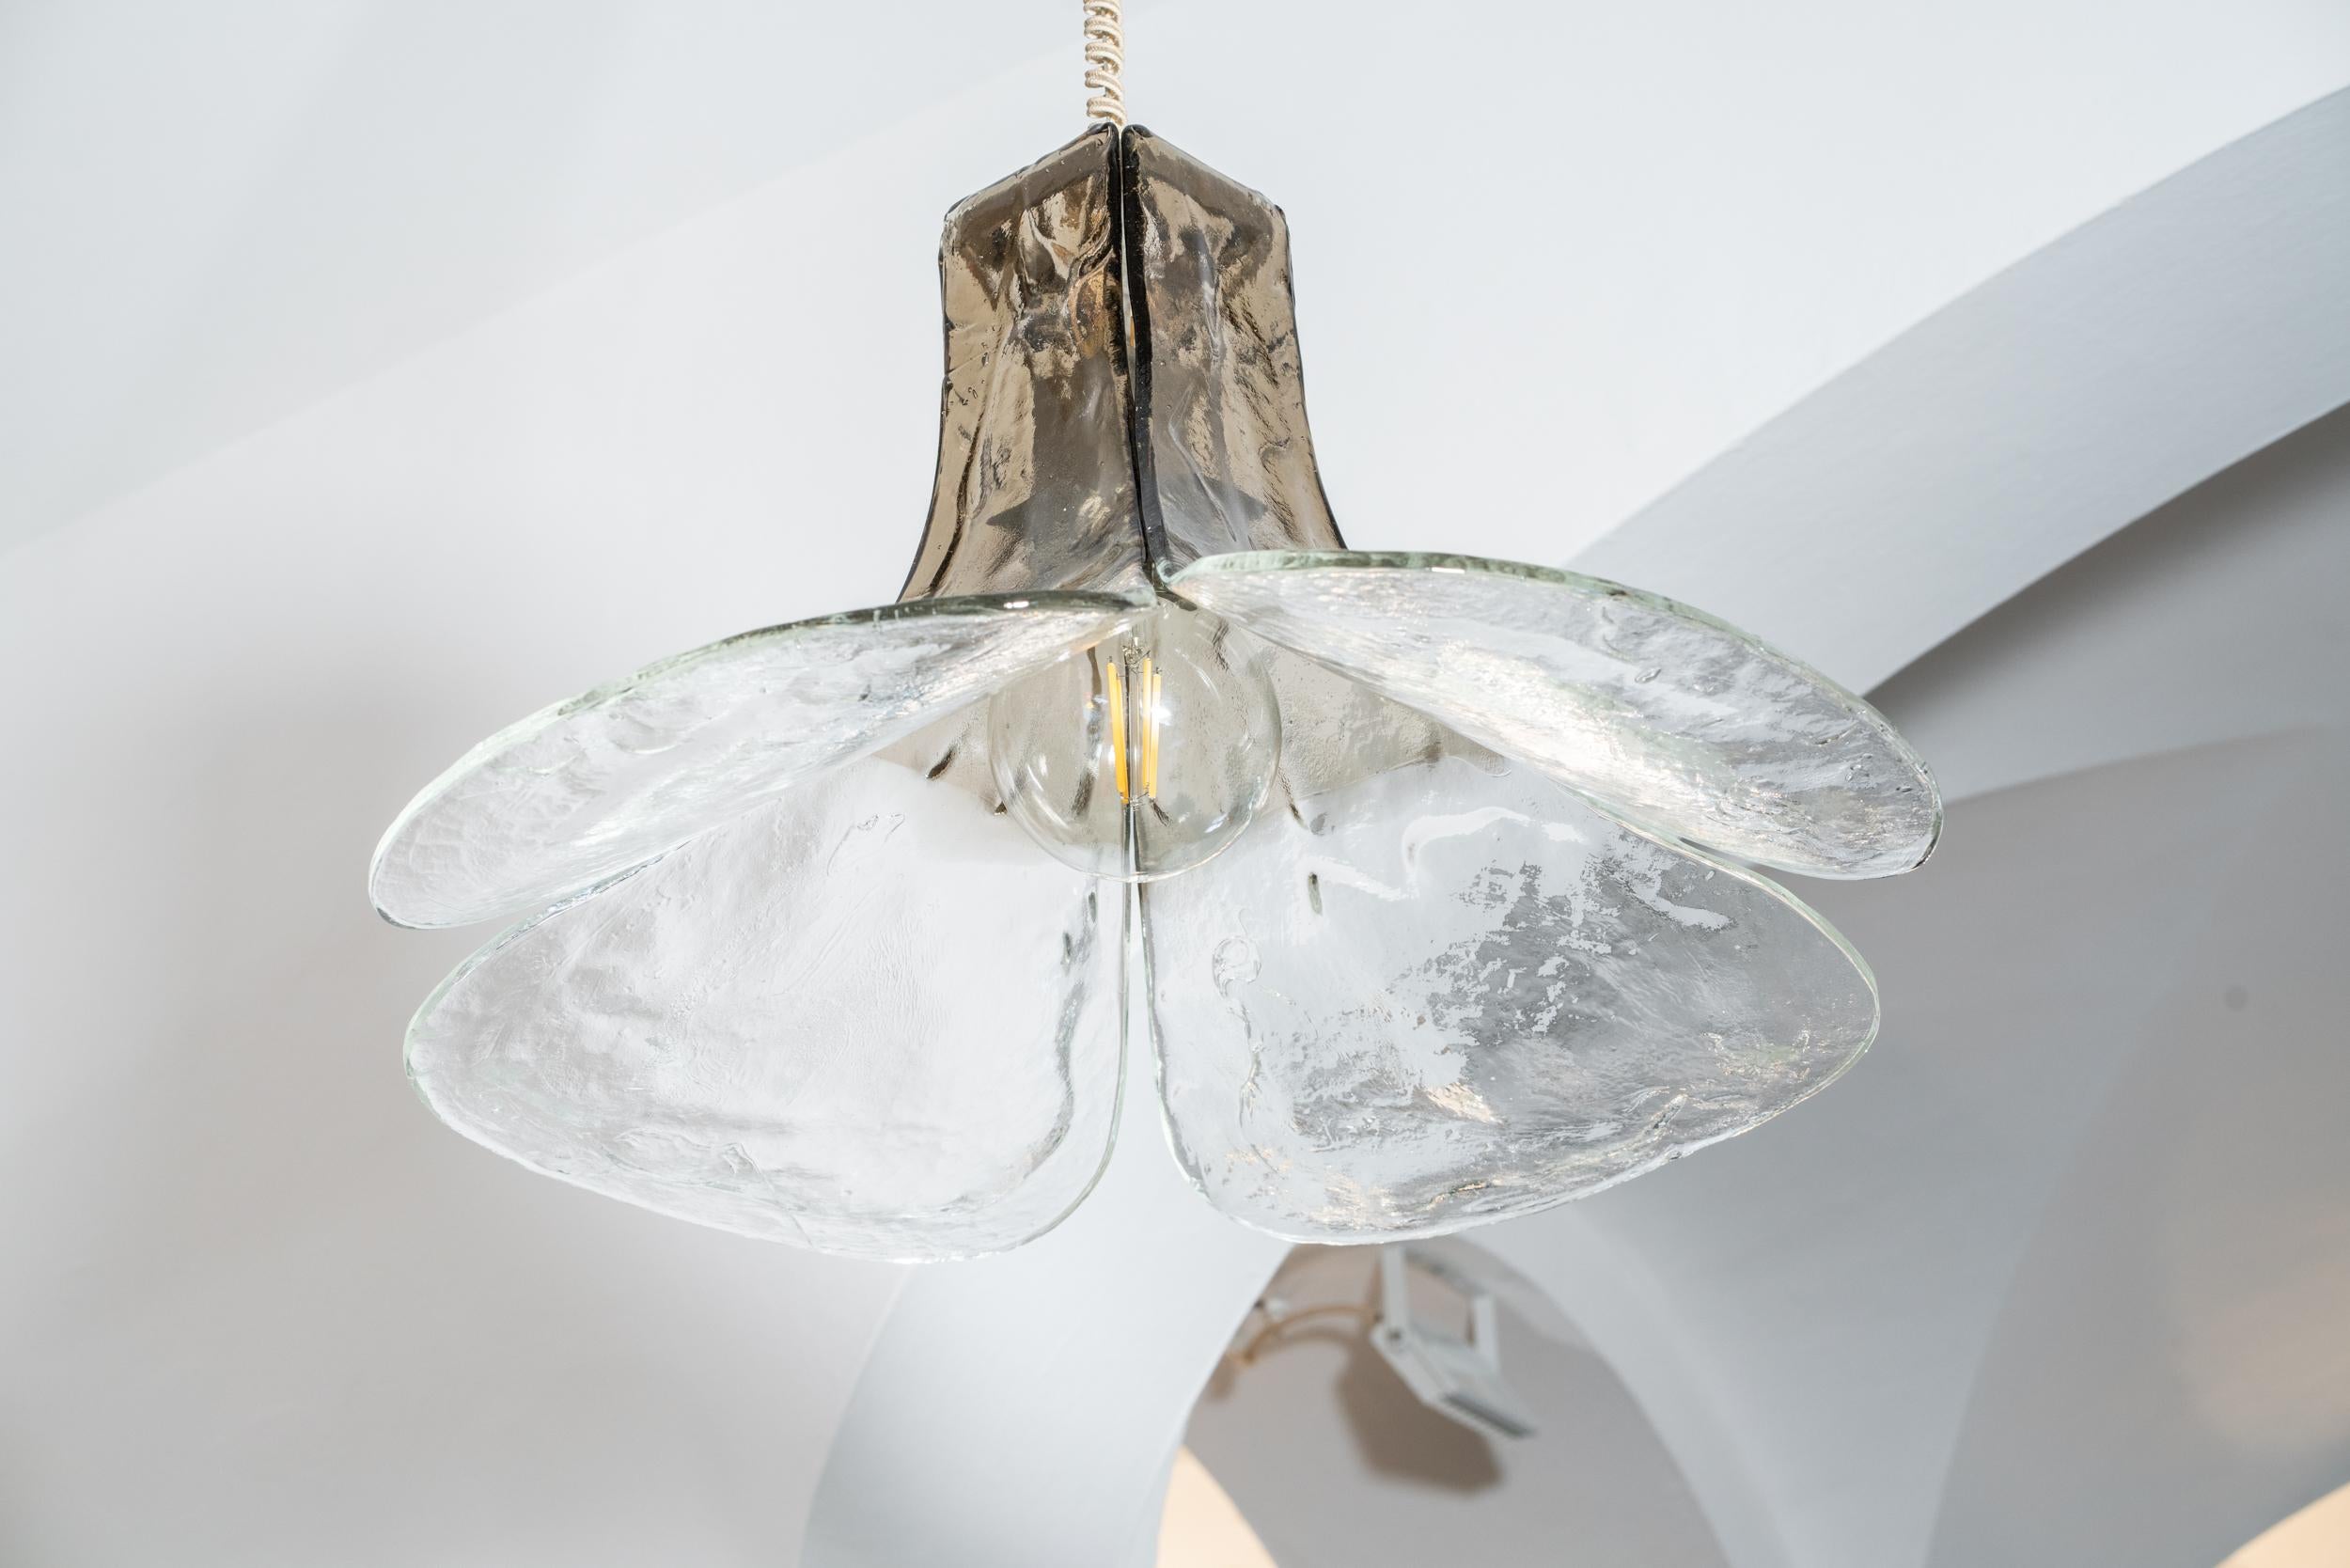 Große Pendelleuchte aus Muranoglas
Entworfen von Carlo Nason und hergestellt von Mazzega, Modell LS185
Die Leuchte besteht aus vier gearbeiteten Glasblättern, mit Schattierungen von transparent bis grün/grau, die an einem Metallrahmen befestigt sind